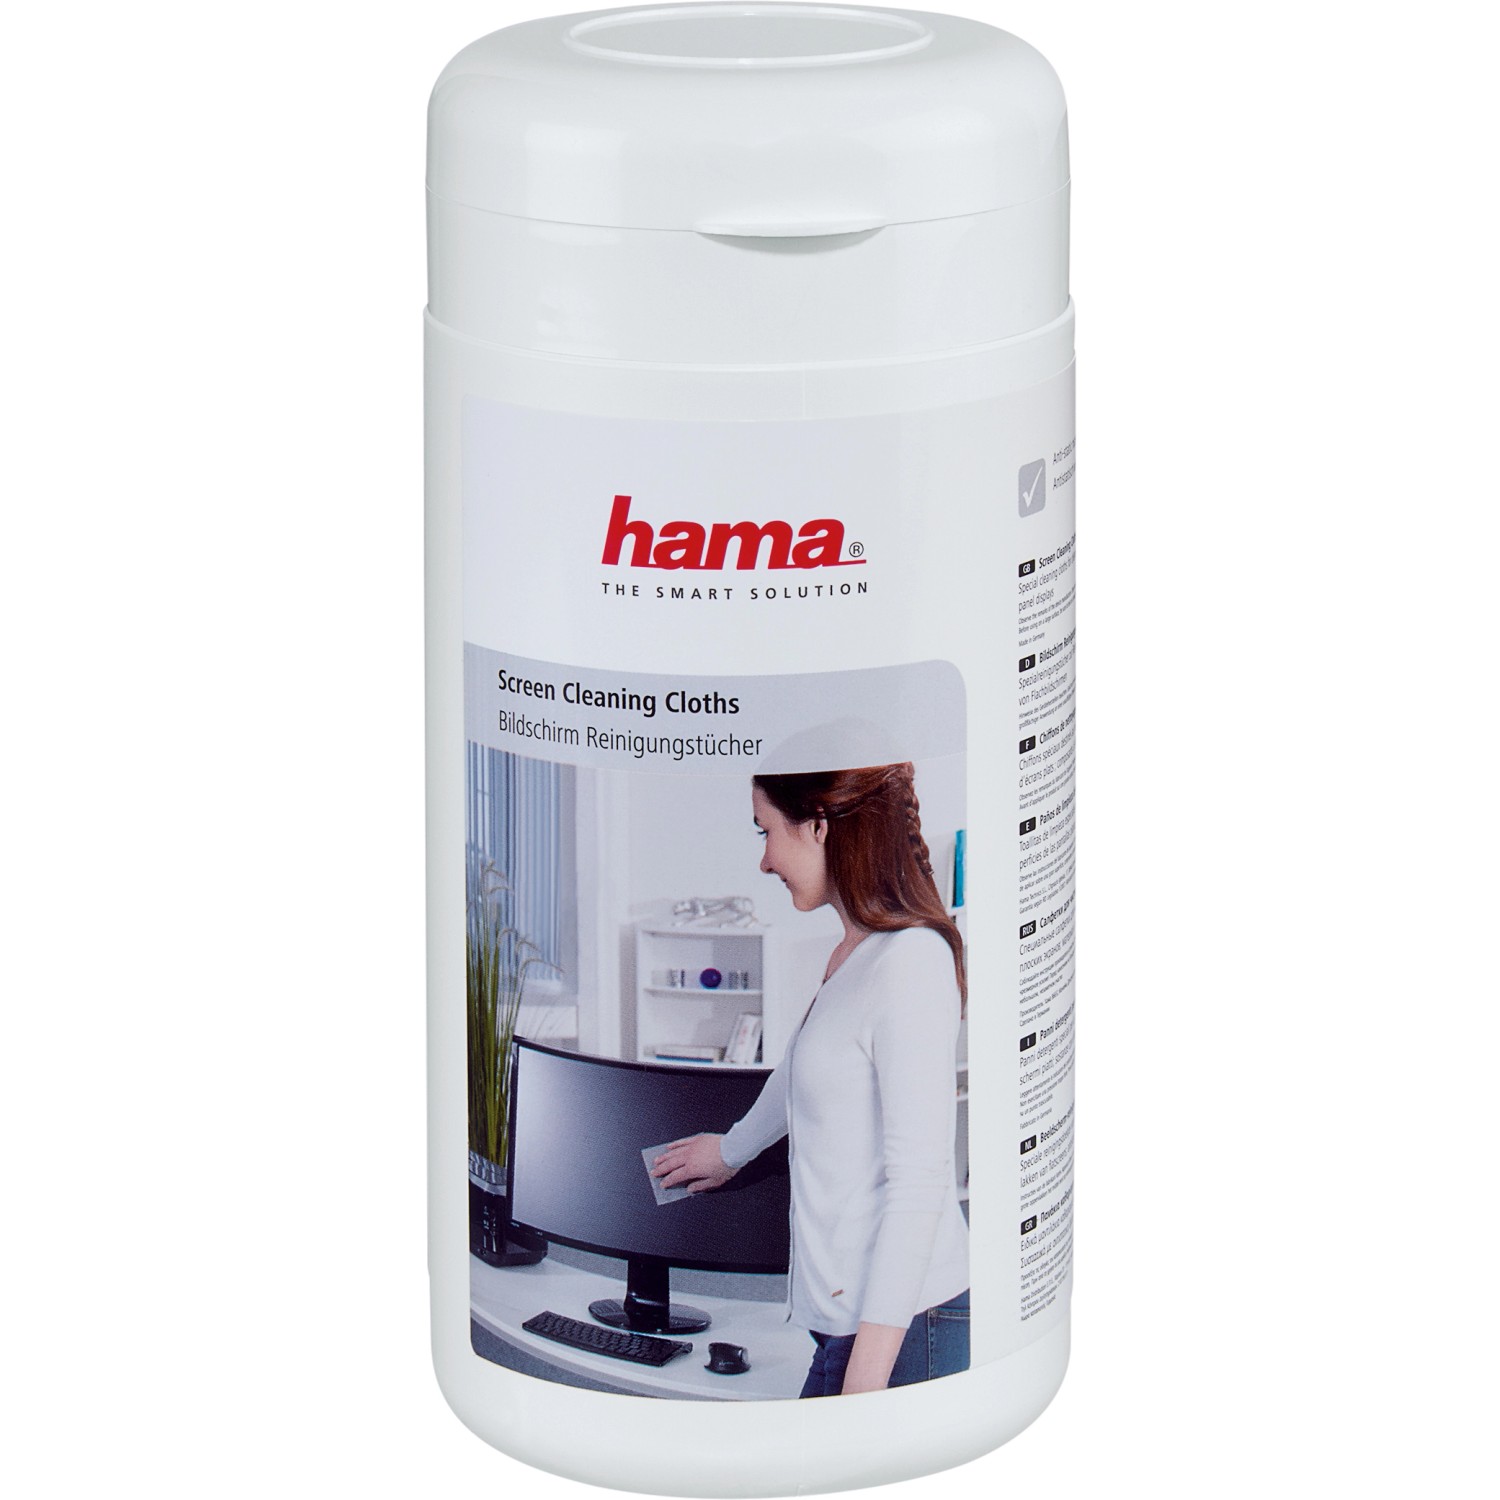 Hama Bildschirm-Reinigungstücher in Spenderdose 100 Stück